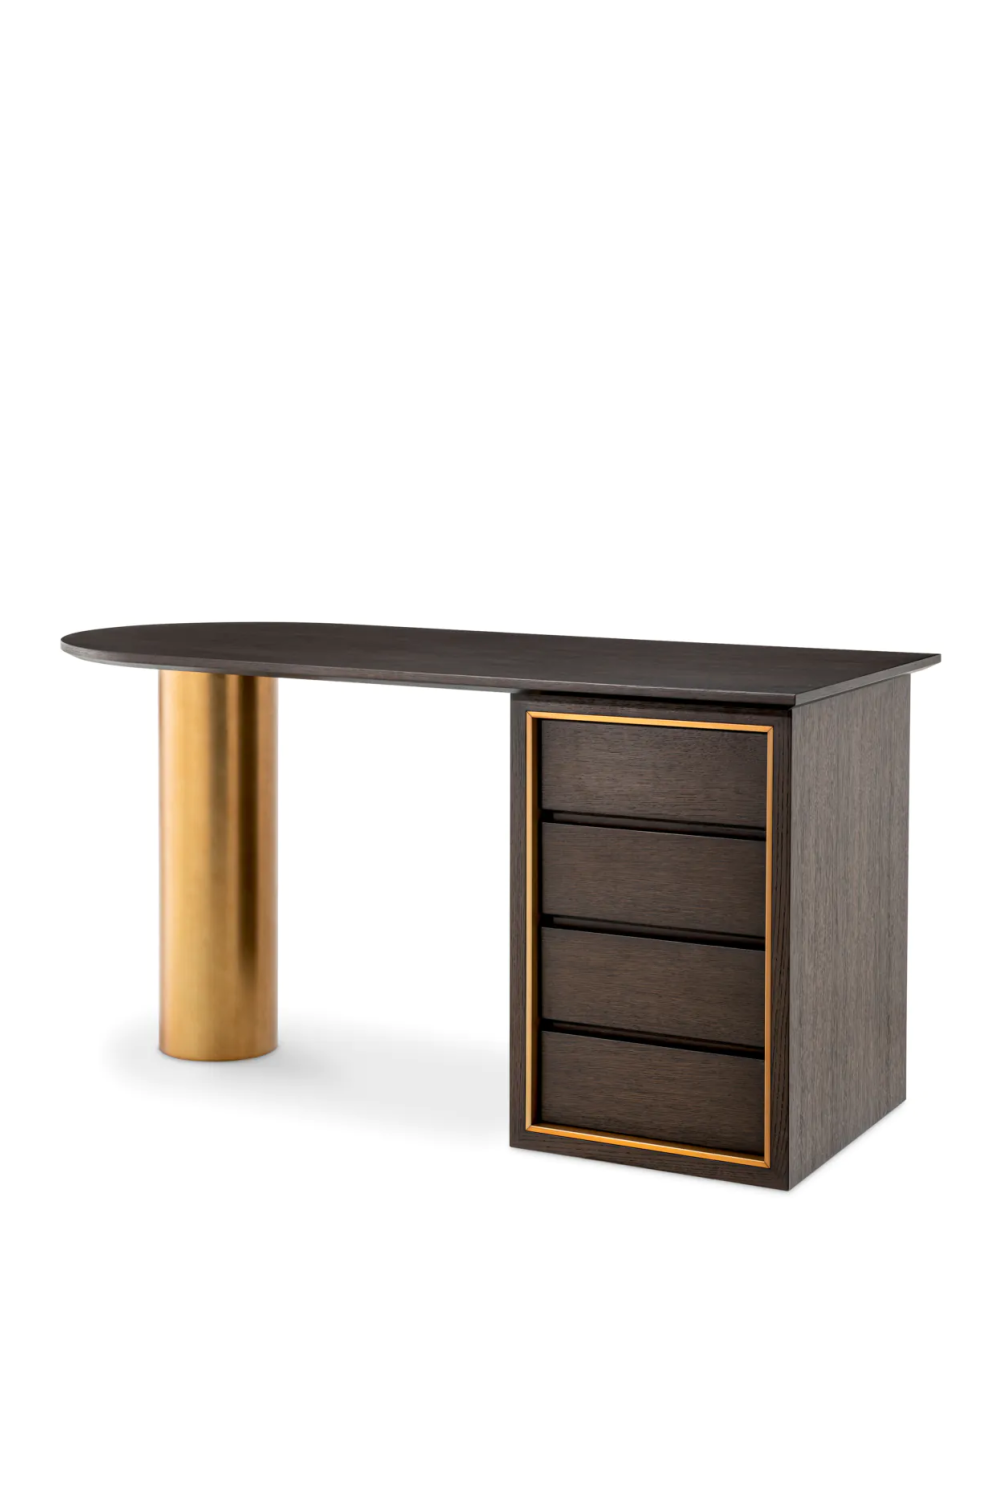 Brown Oak Contemporary Desk | Eichholtz Del Rio | Oroa.com